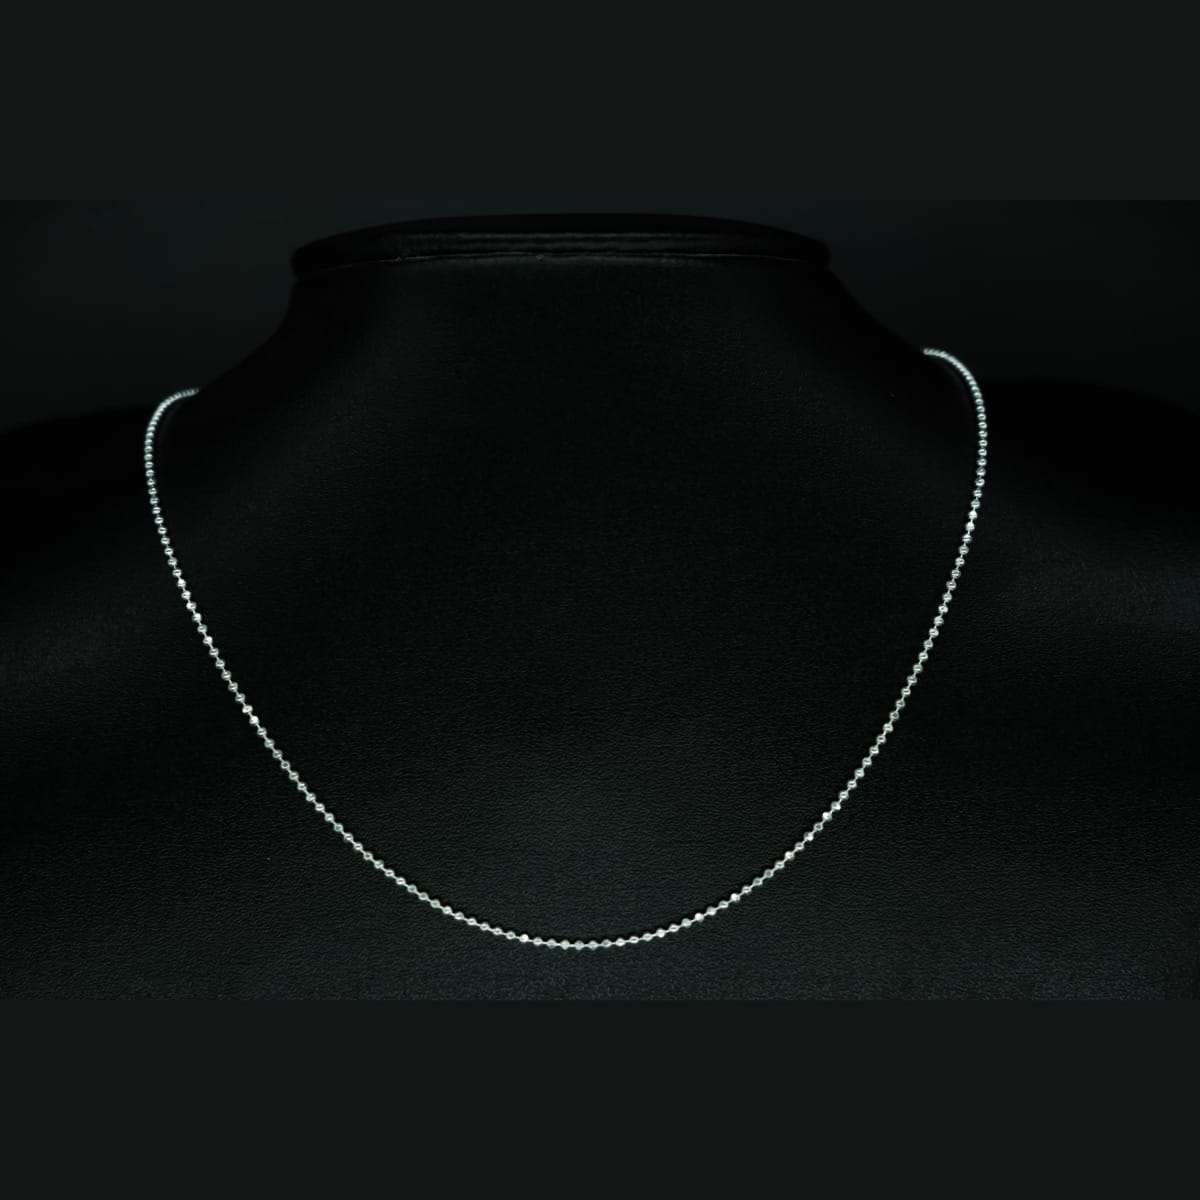 Buy Bead Chain 925 Silver Online | P S Jewellery - JewelFlix